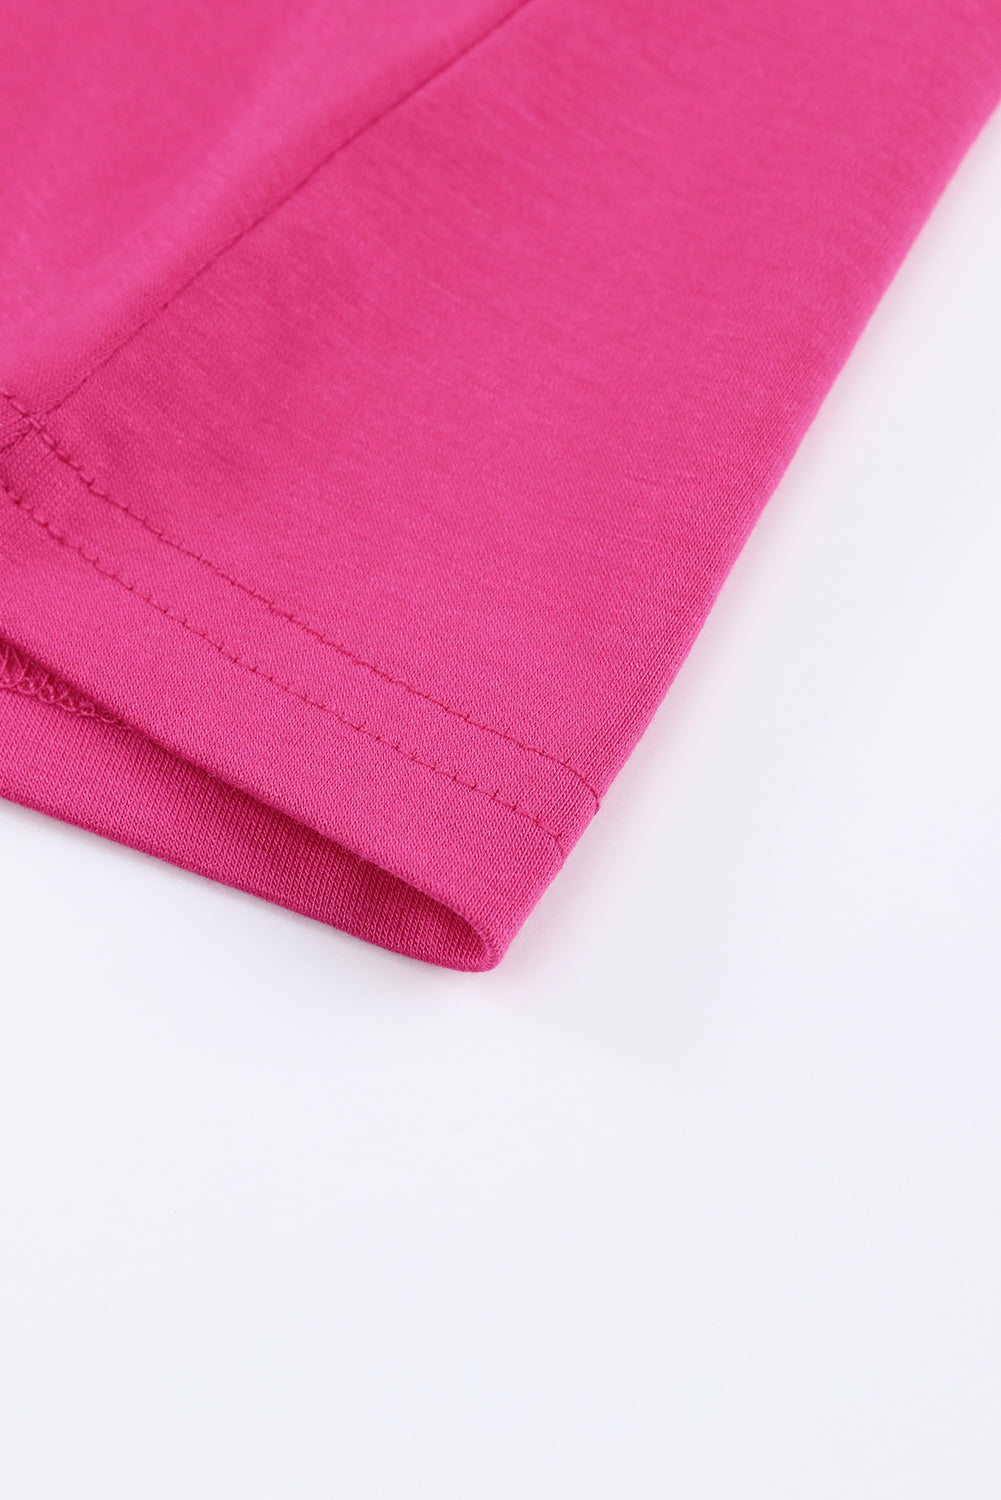 Majica kratkih rukava s ružičastim kamenčićima s križanjem